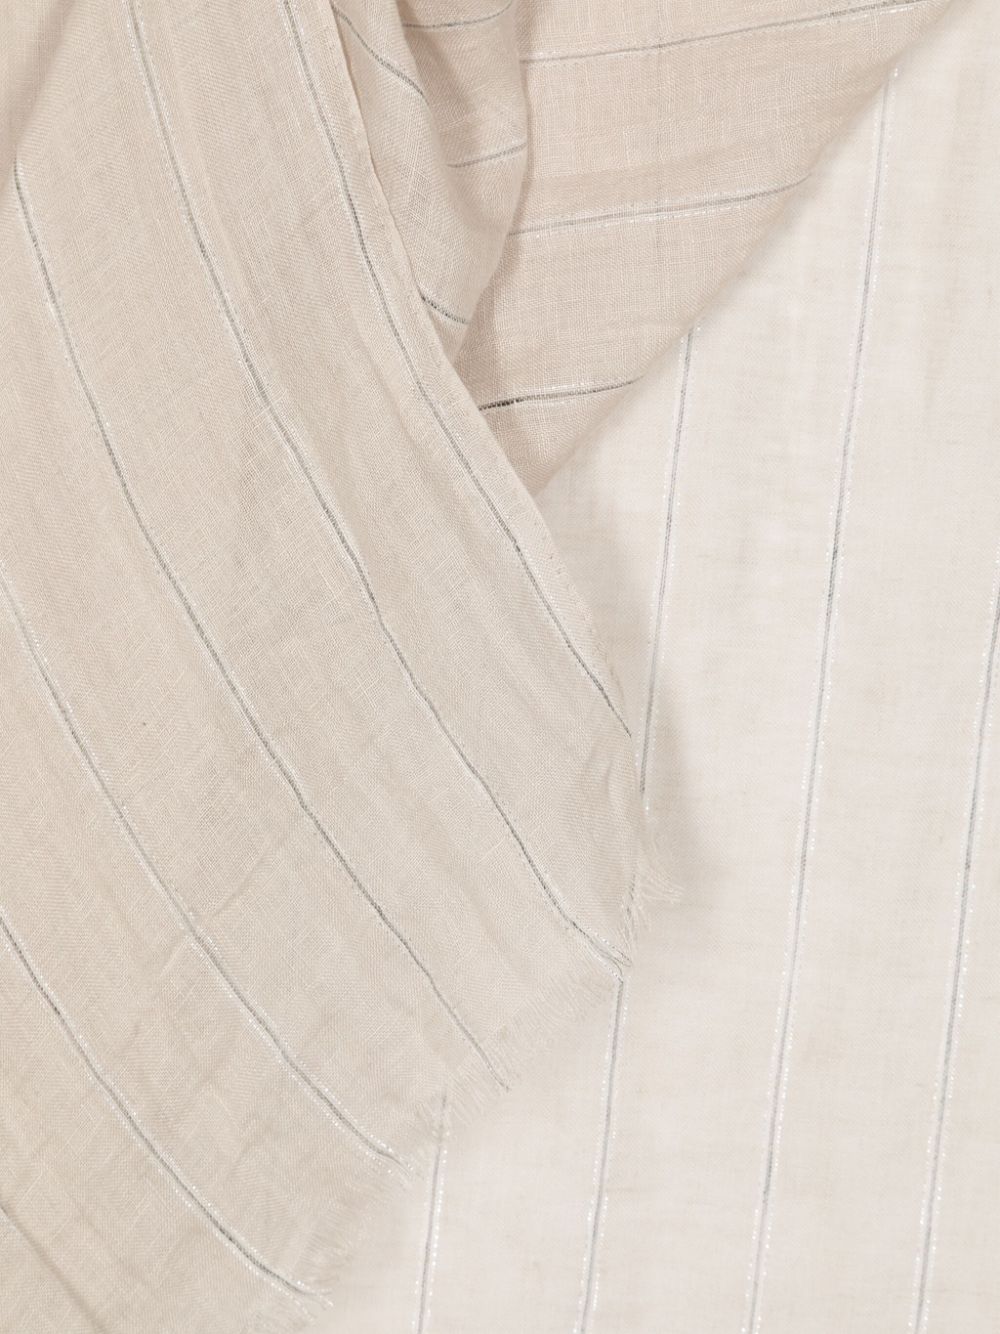 Brunello Cucinelli metallic-threading striped scarf - Beige